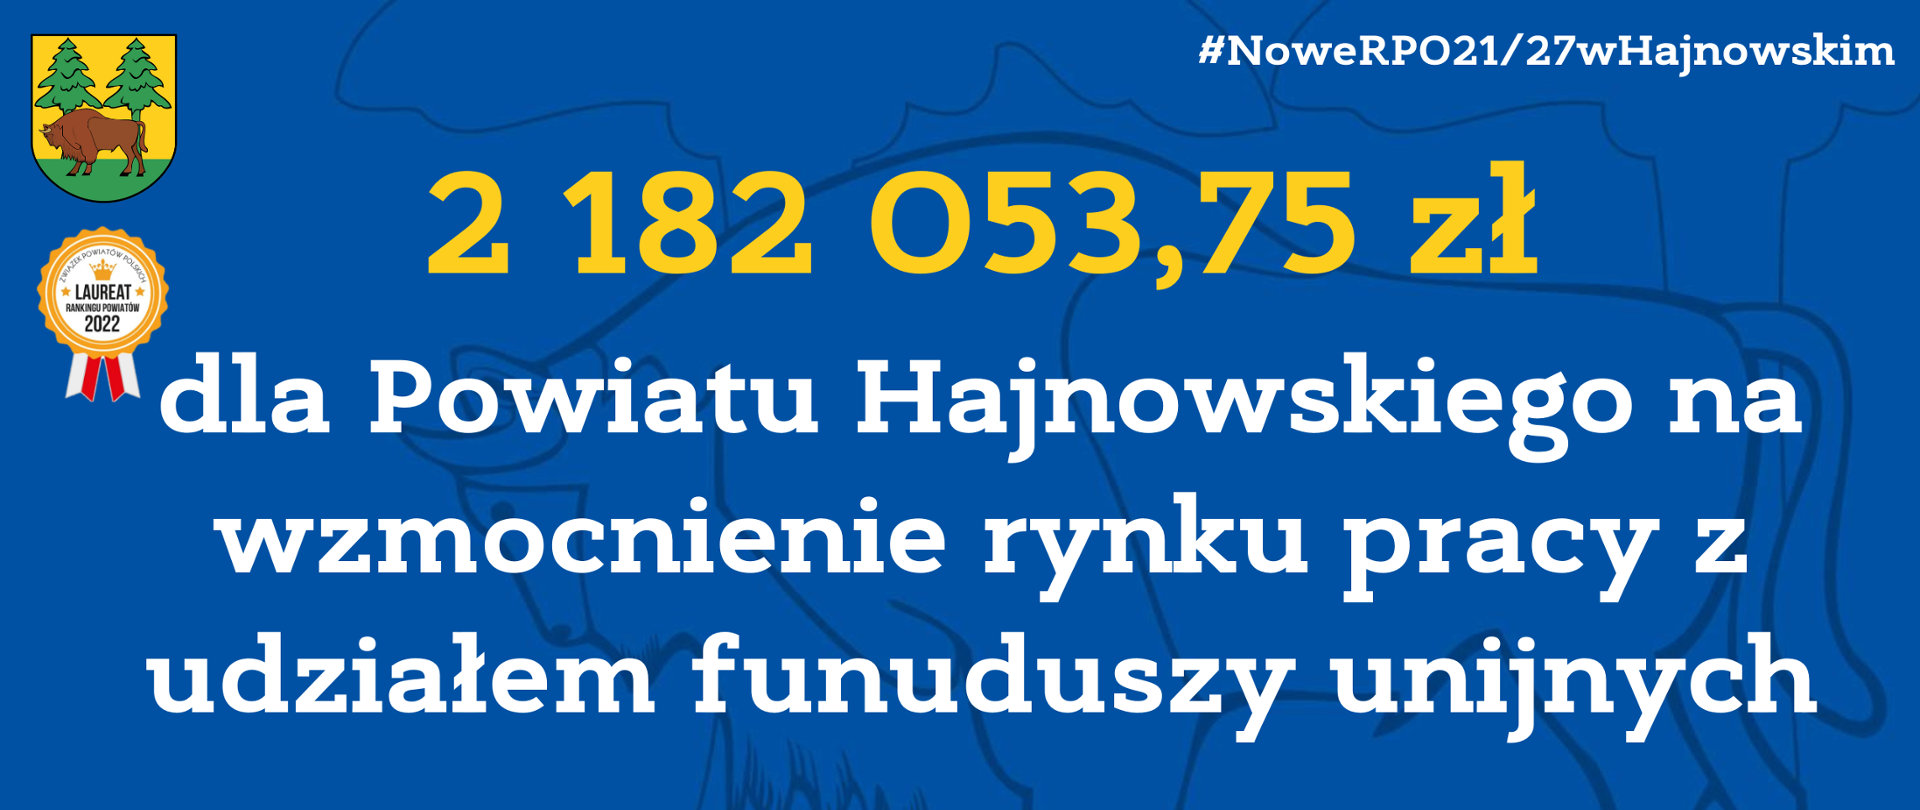 2 182 053,75 zł dla Powiatu Hajnowskiego na wzmocnienie rynku pracy z udziałem funduszy
unijnych